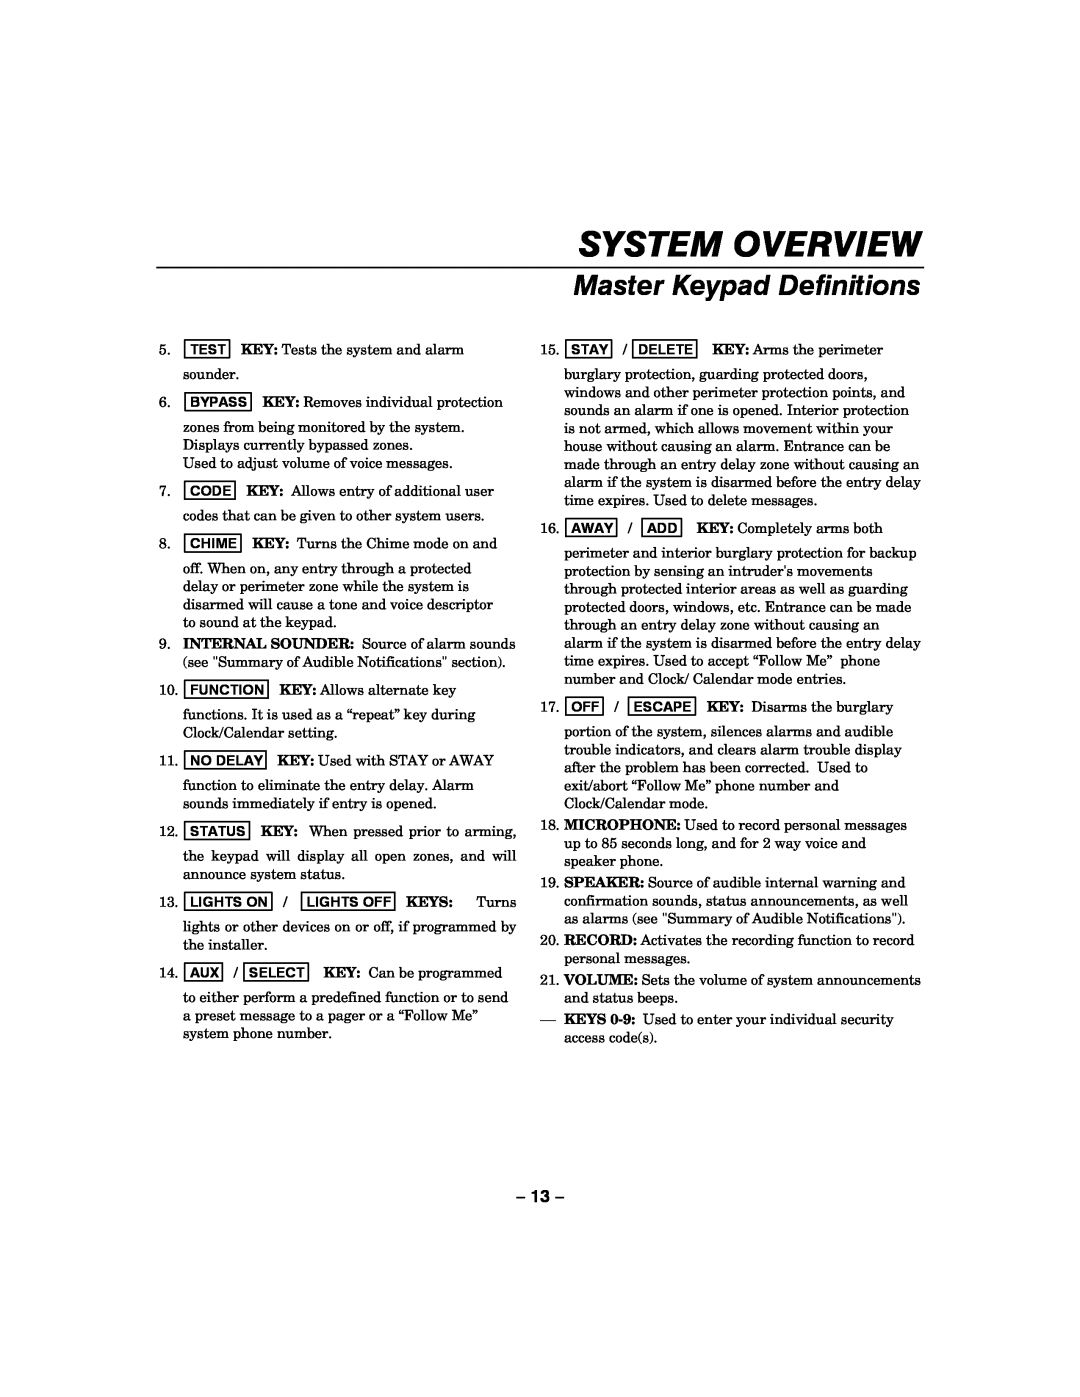 Honeywell LYNXR-I manual System Overview, Master Keypad Definitions, LIGHTS ON / LIGHTS OFF KEYS Turns 